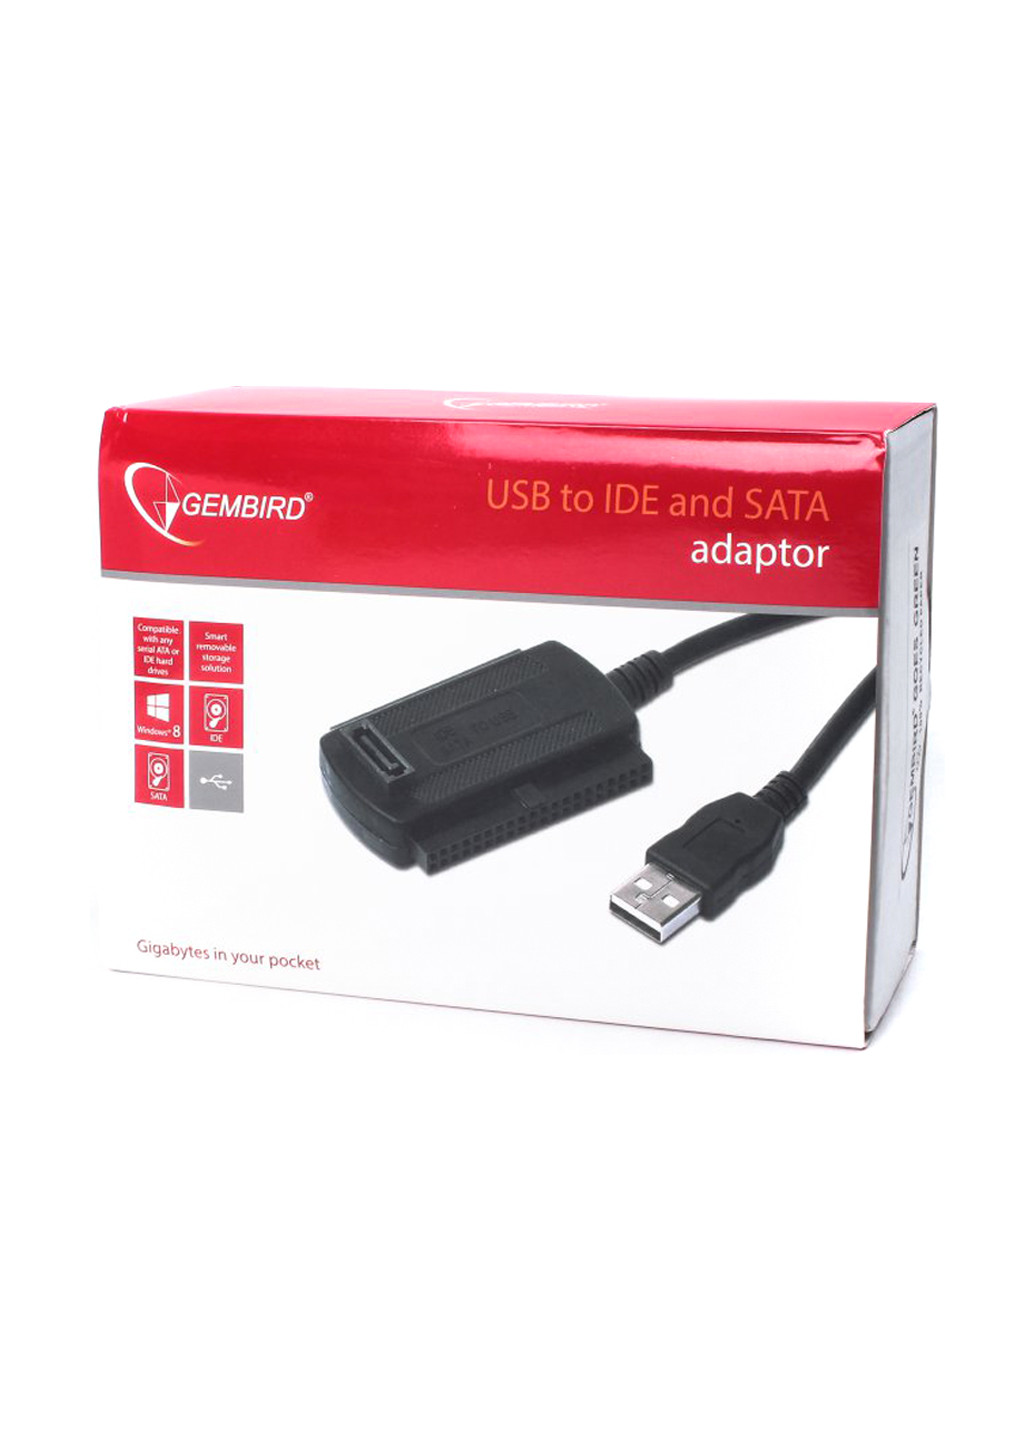 Перехідник USB на IDE 2.5 "\ 3.5" і SATA адаптери (AUSI01) Cablexpert usb на ide 2.5 "\ 3.5" и sata адаптеры (ausi01) (137500415)